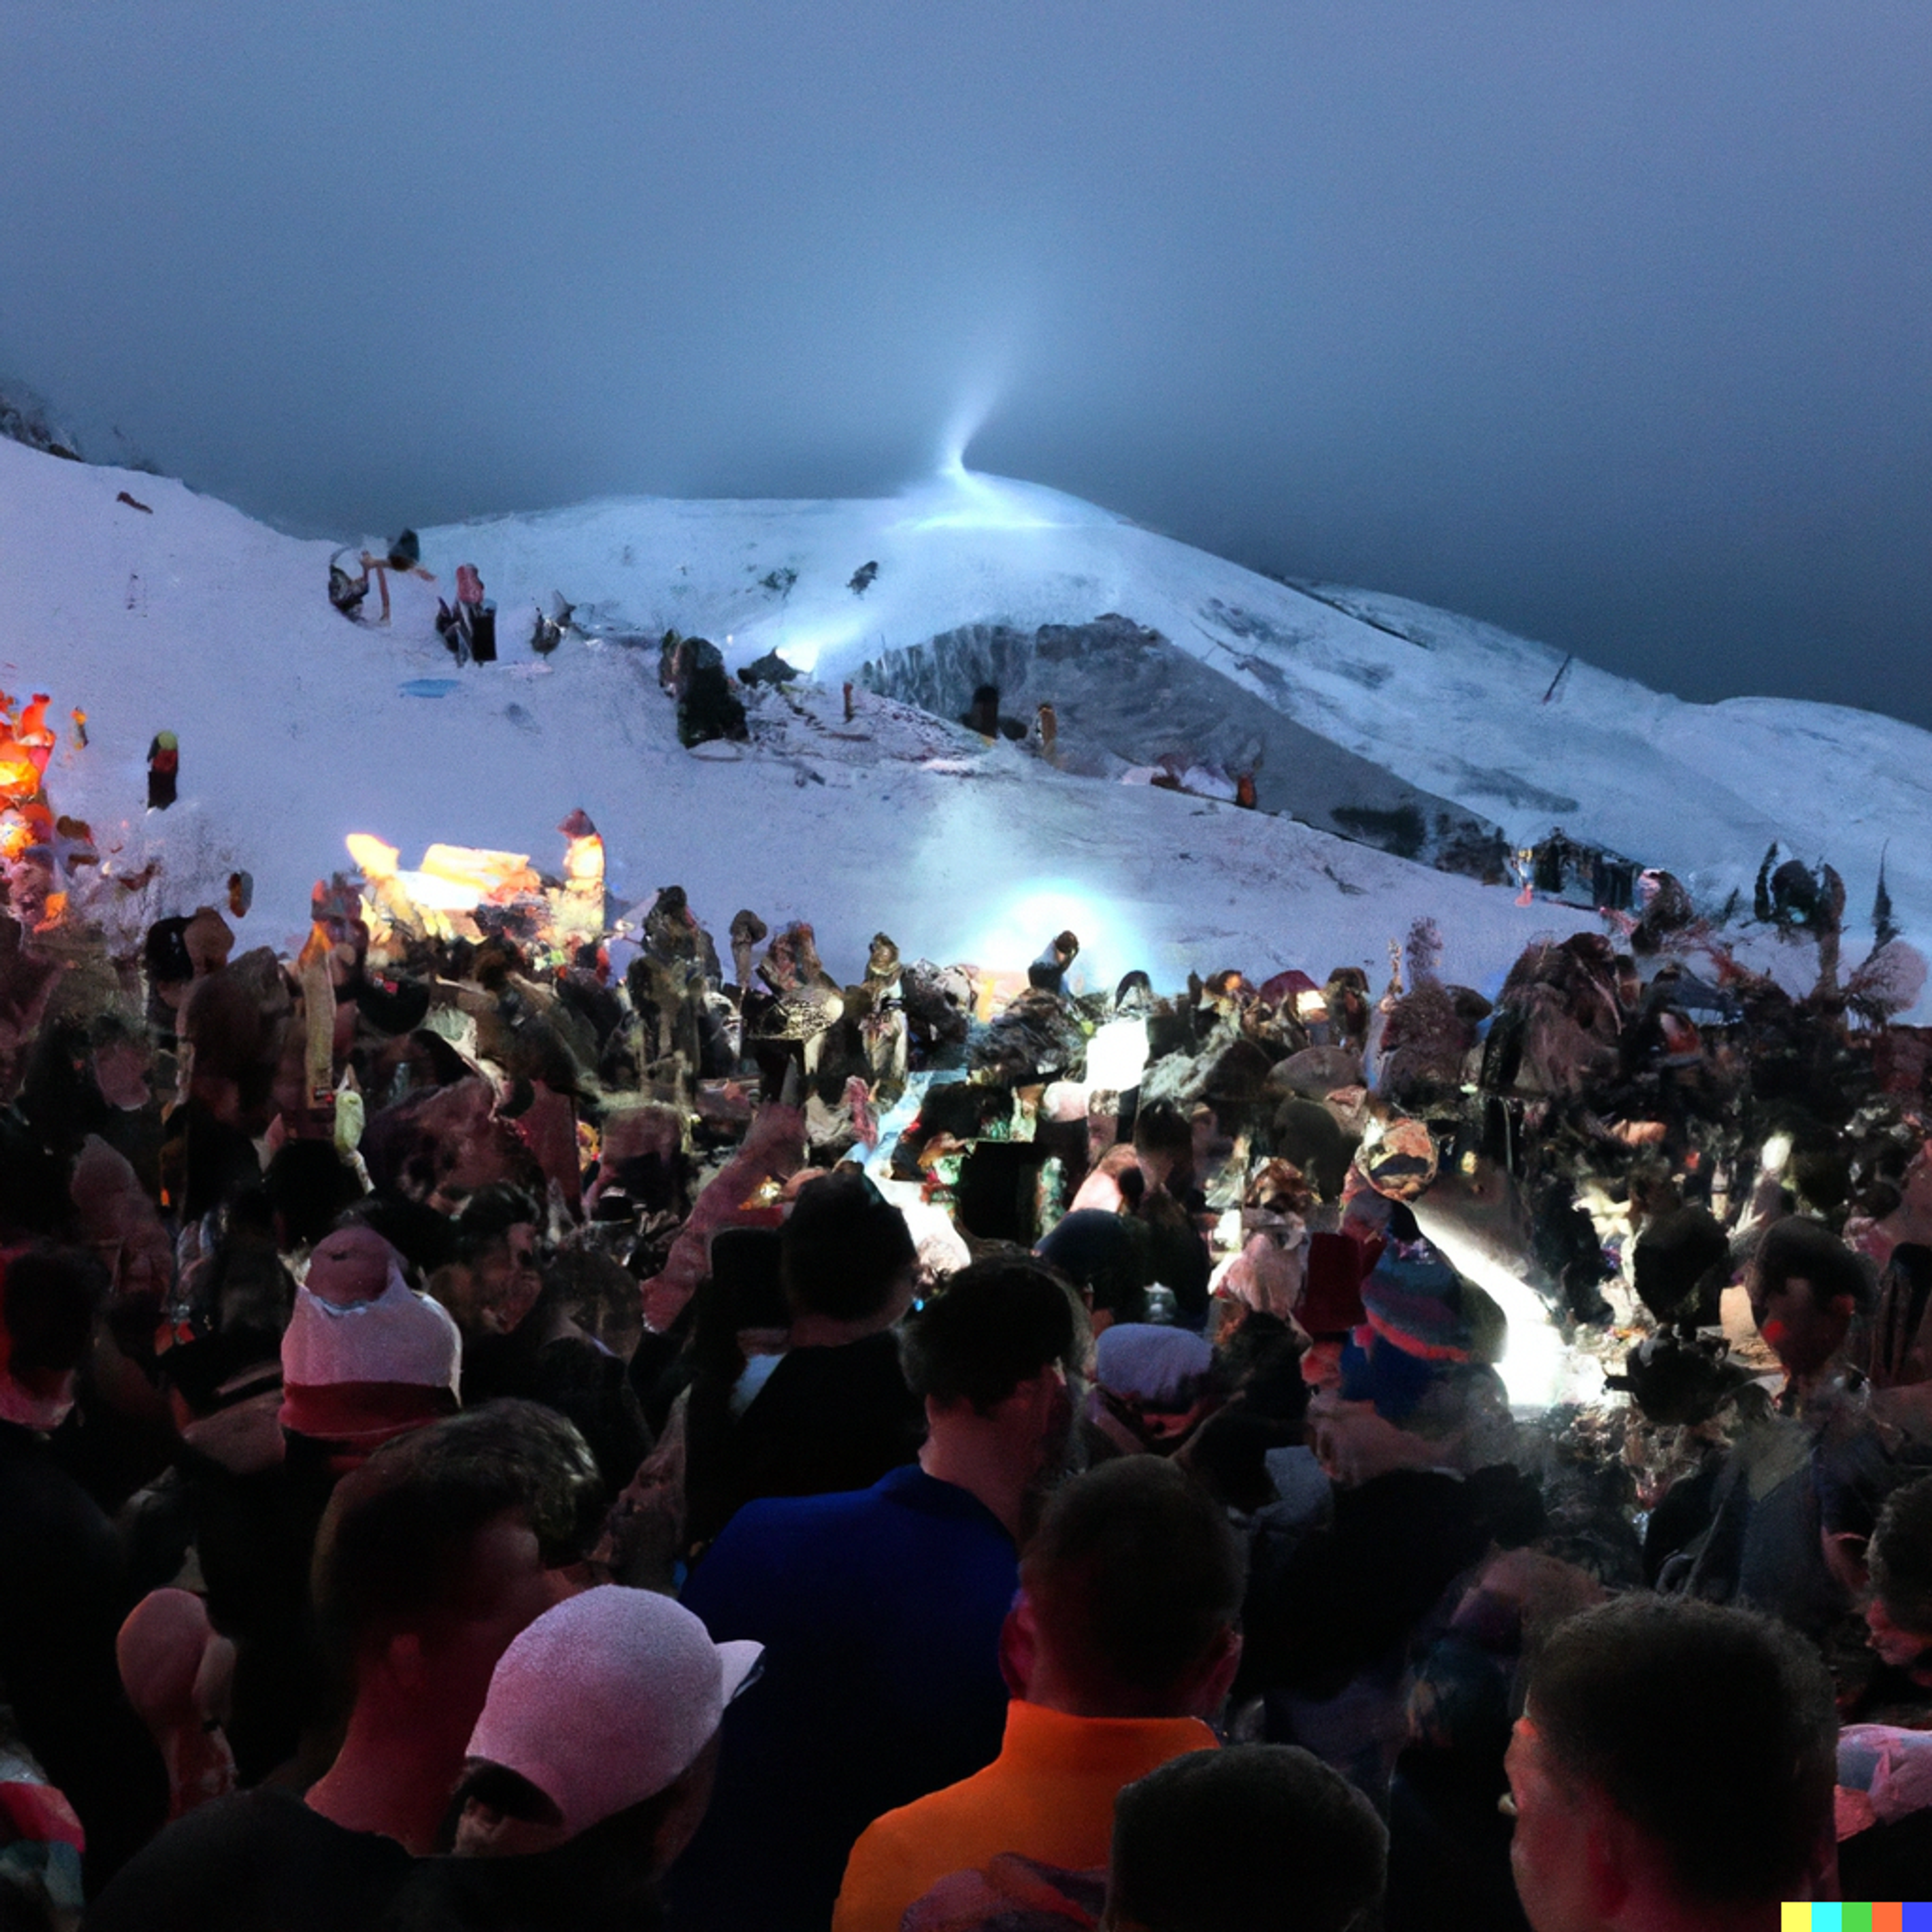 Les Deux Alpes Winter Festival - Rise festival